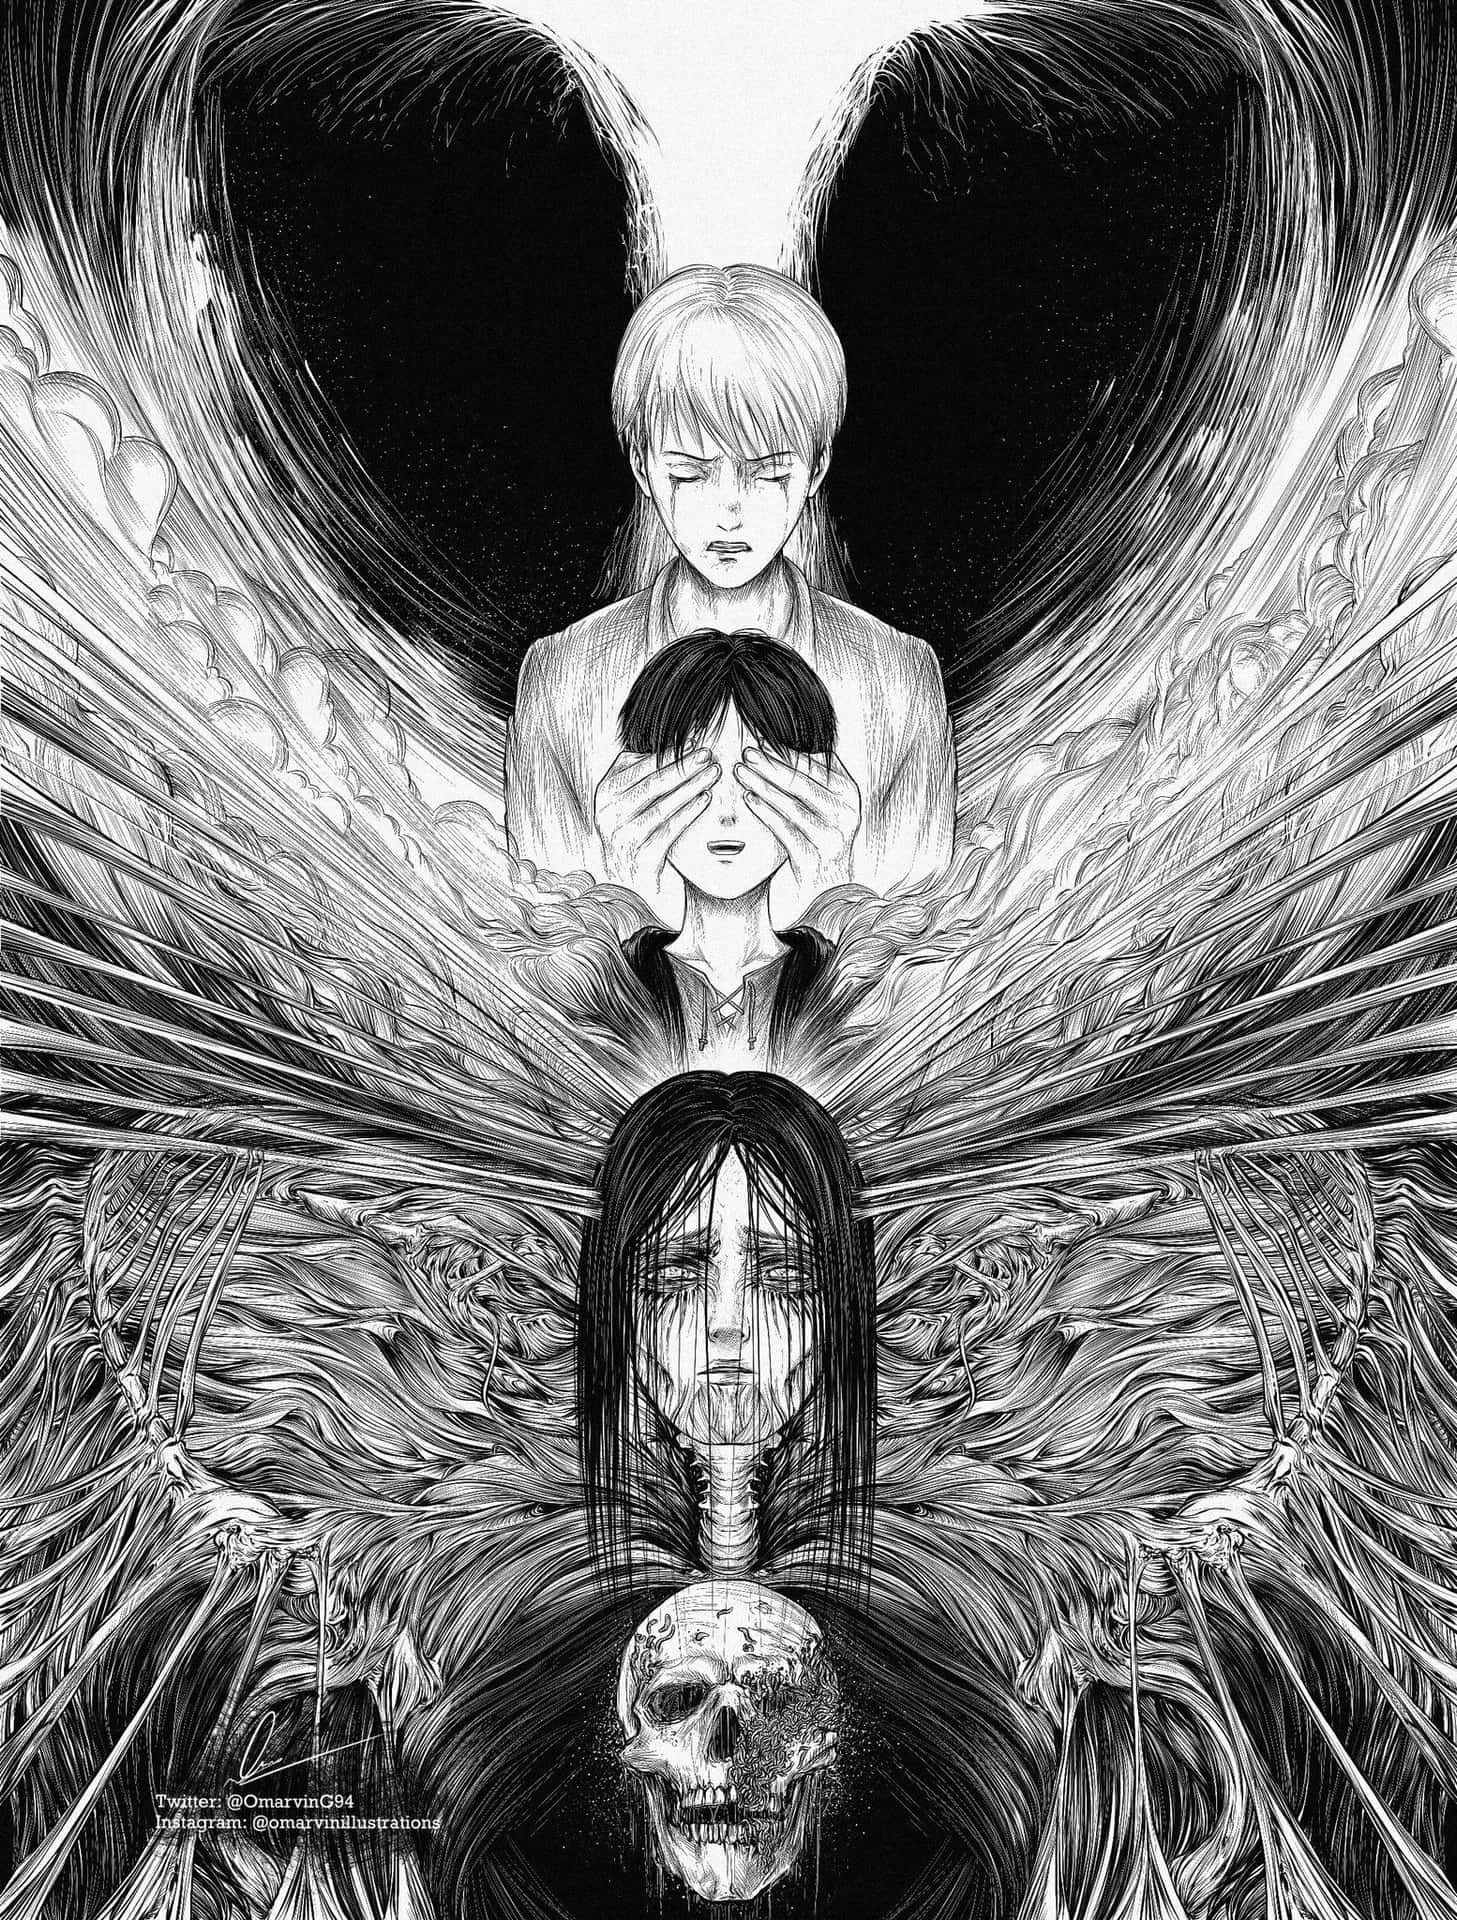 Spirited Away, the beloved manga series Wallpaper